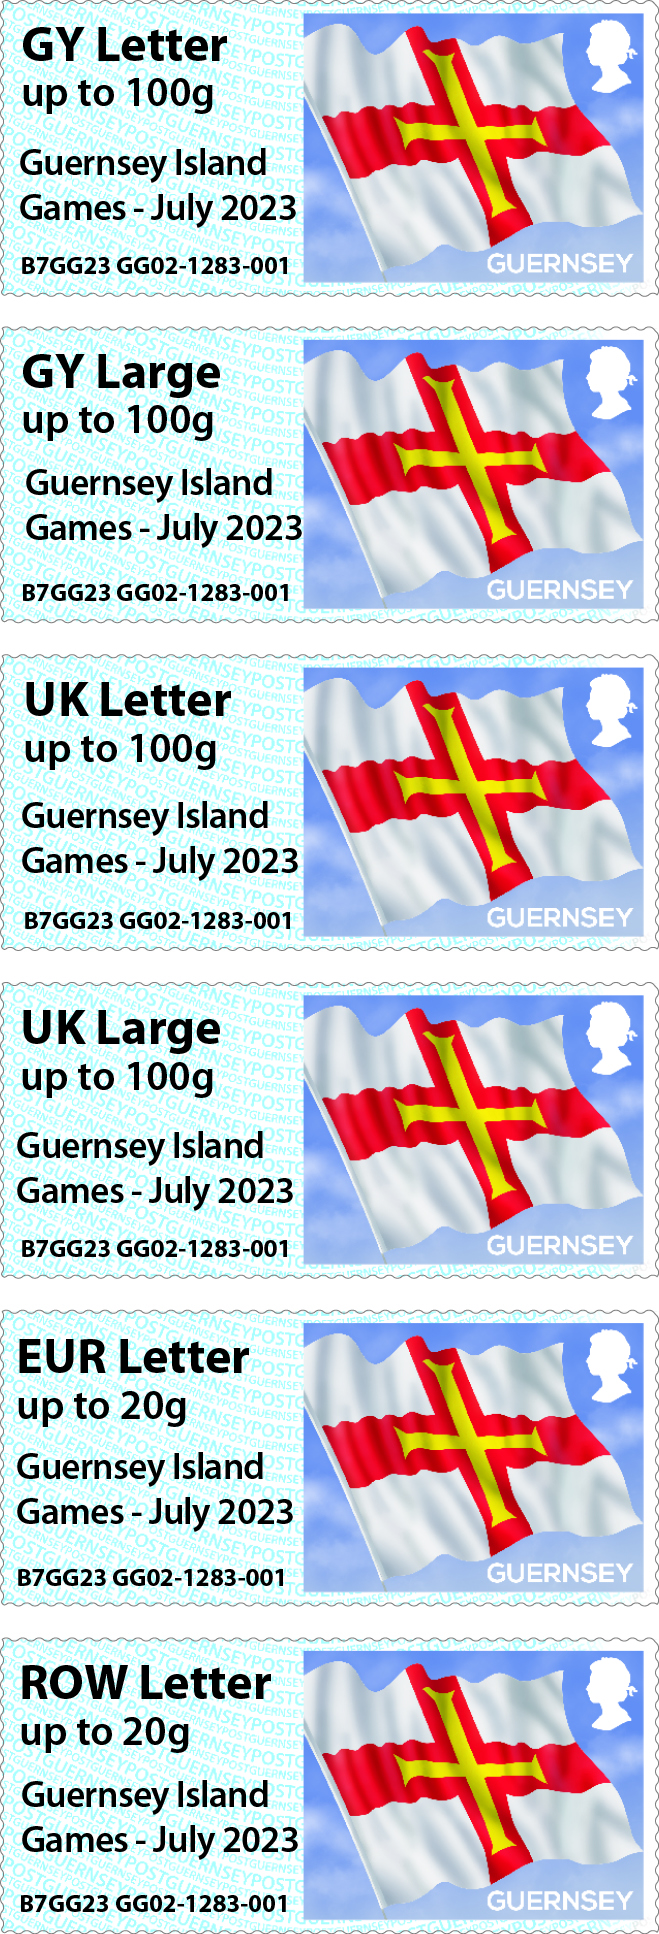 Guernsey Island Games - July 2023 overprint